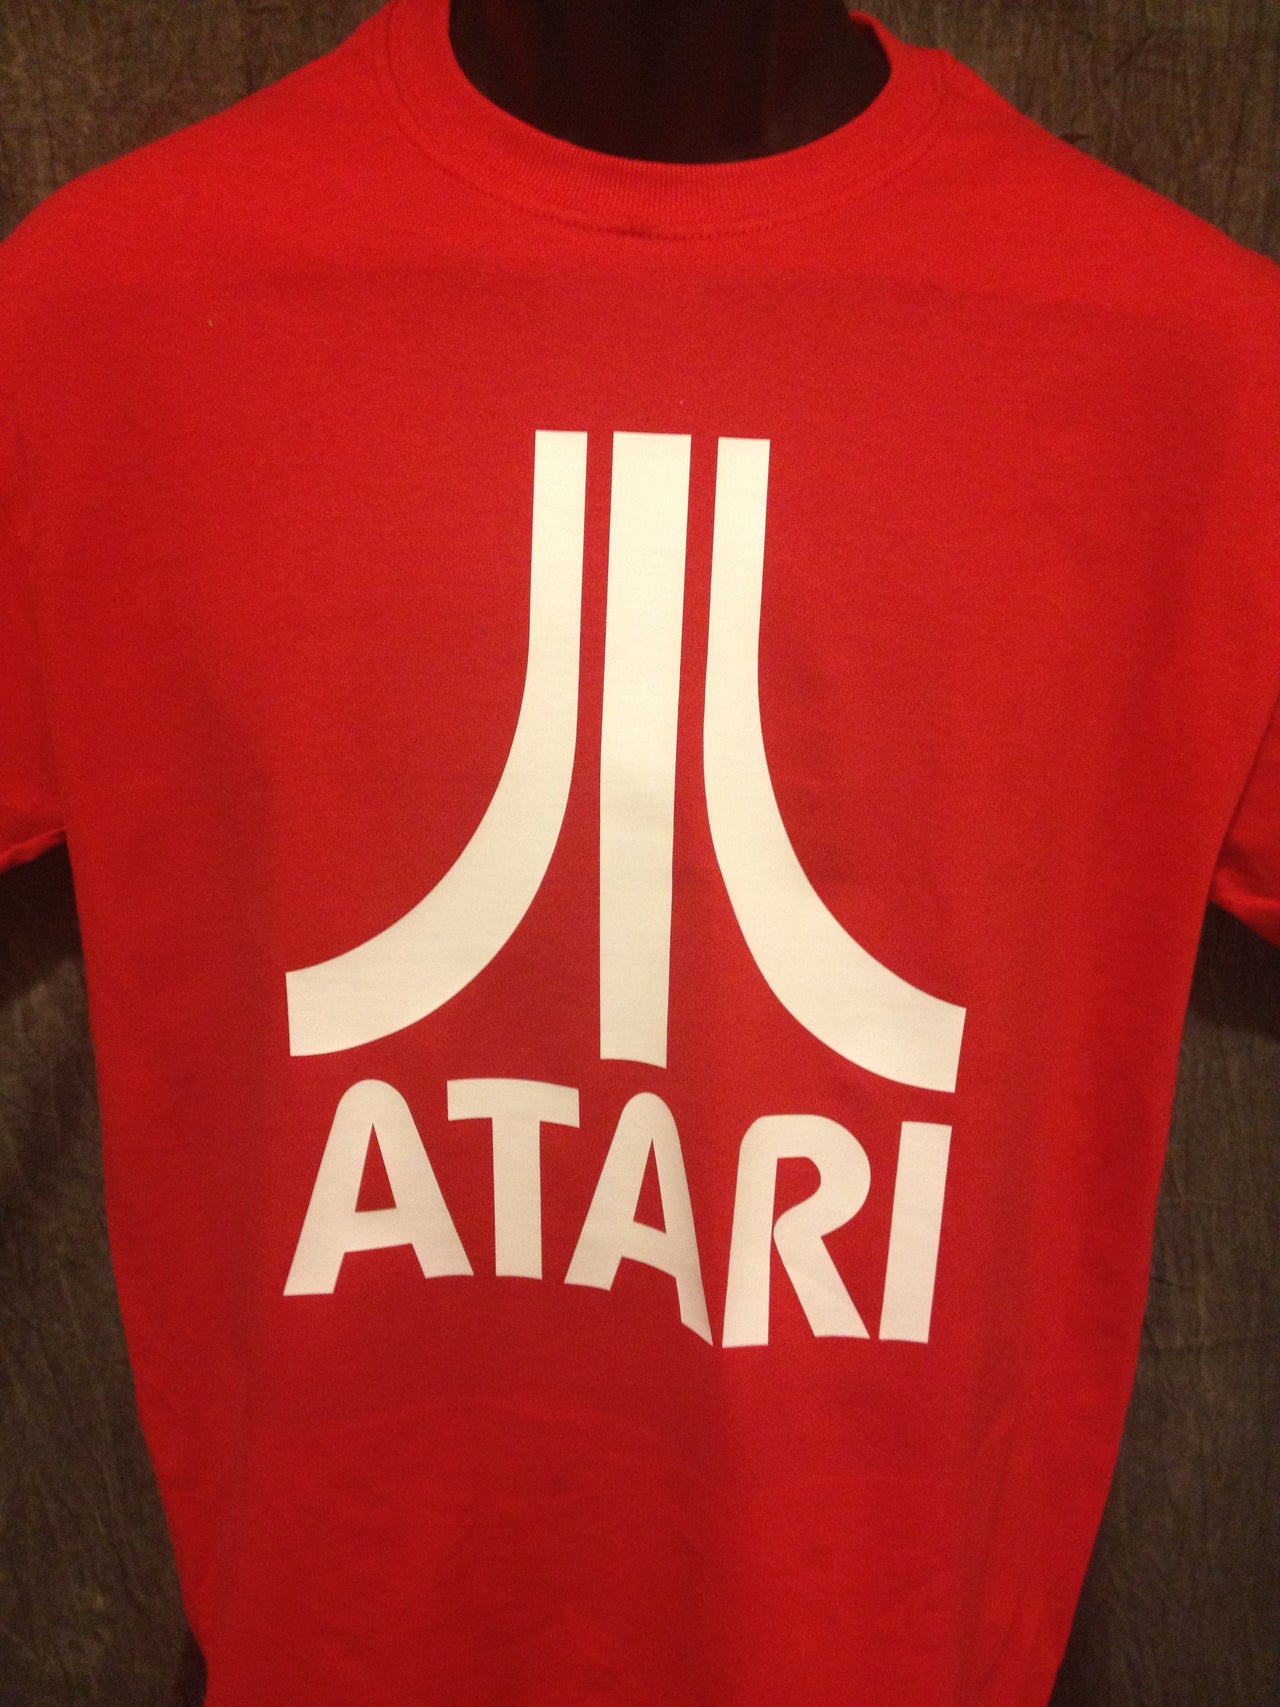 Atari Logo Tshirt: Red With White Print - TshirtNow.net - 3